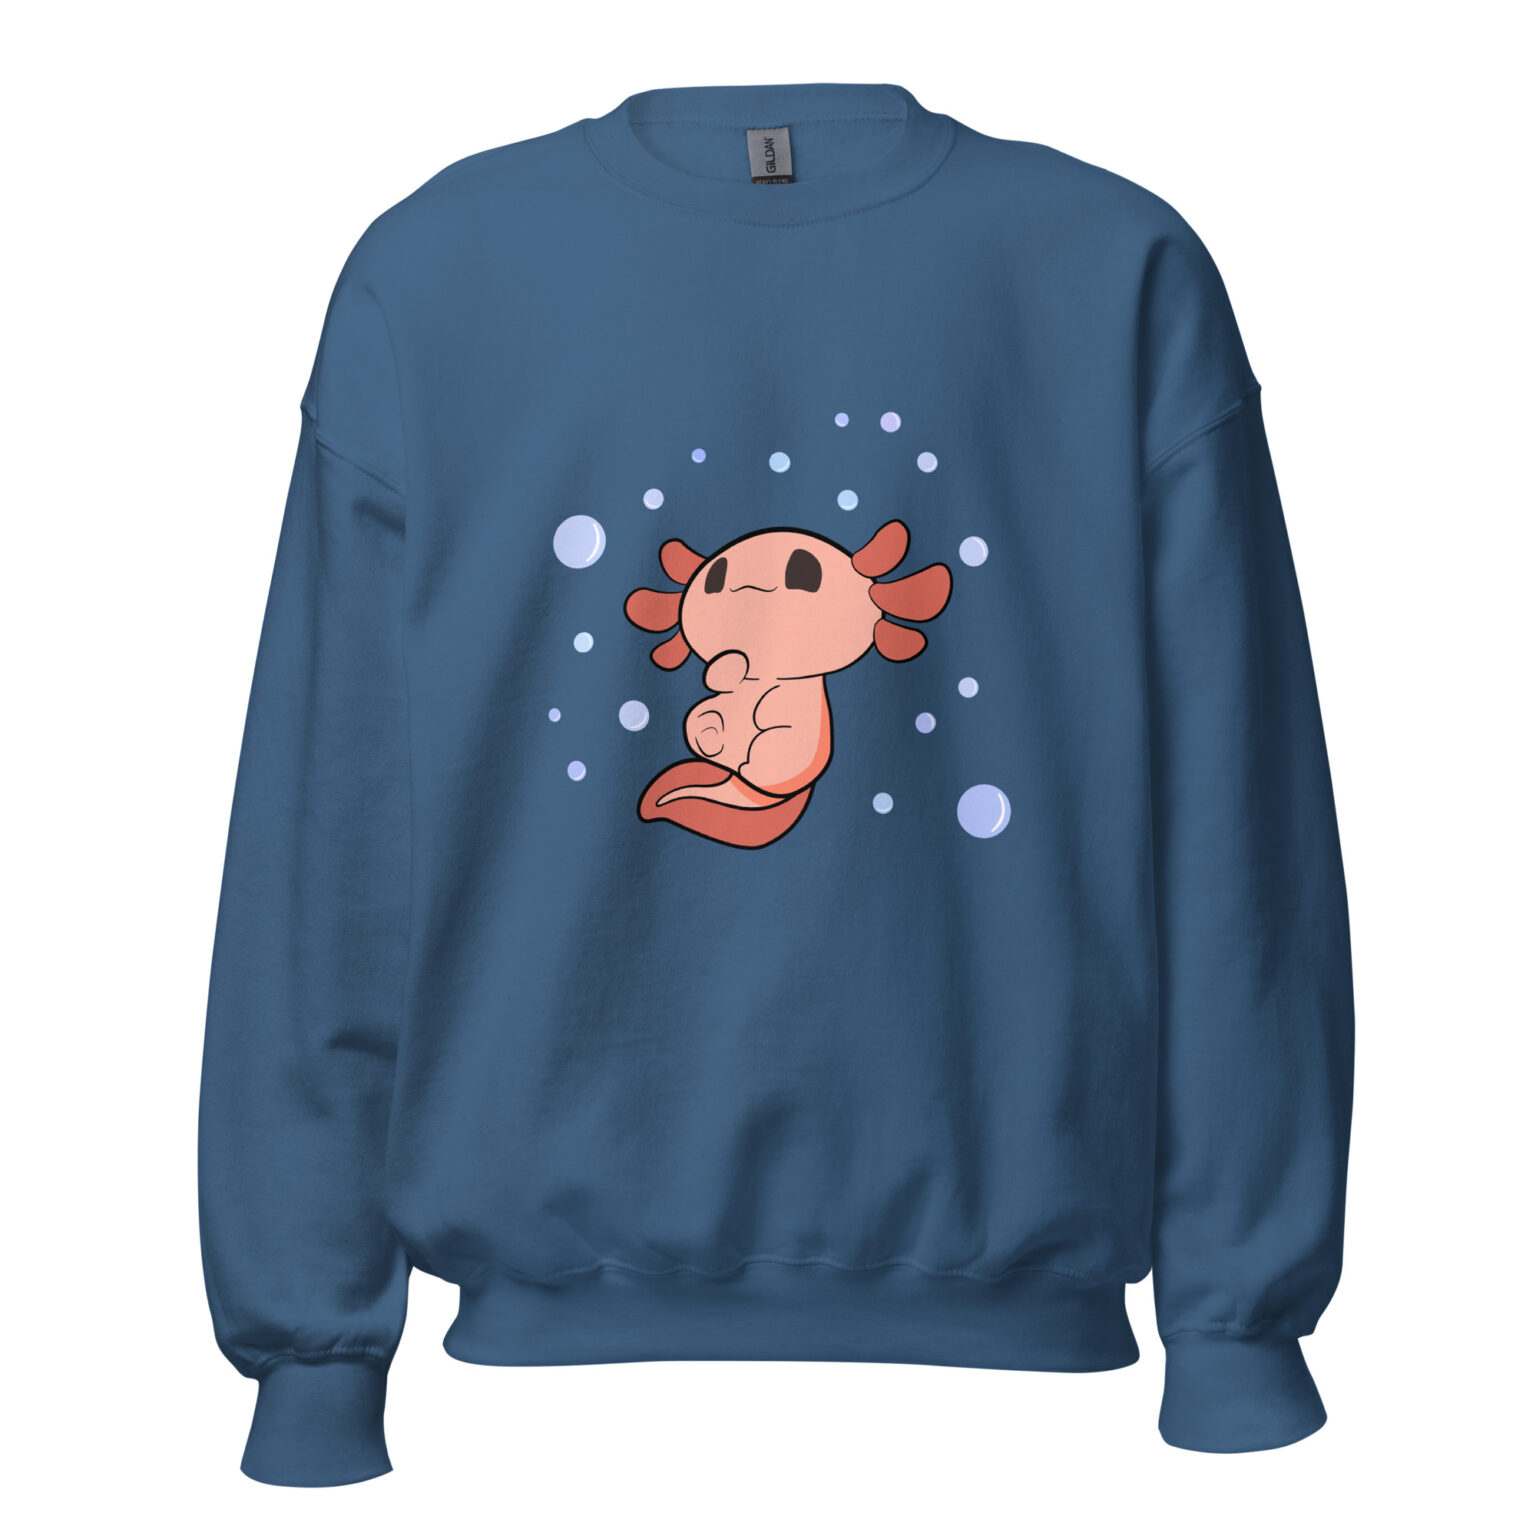 Axel the axolotl sweatshirt